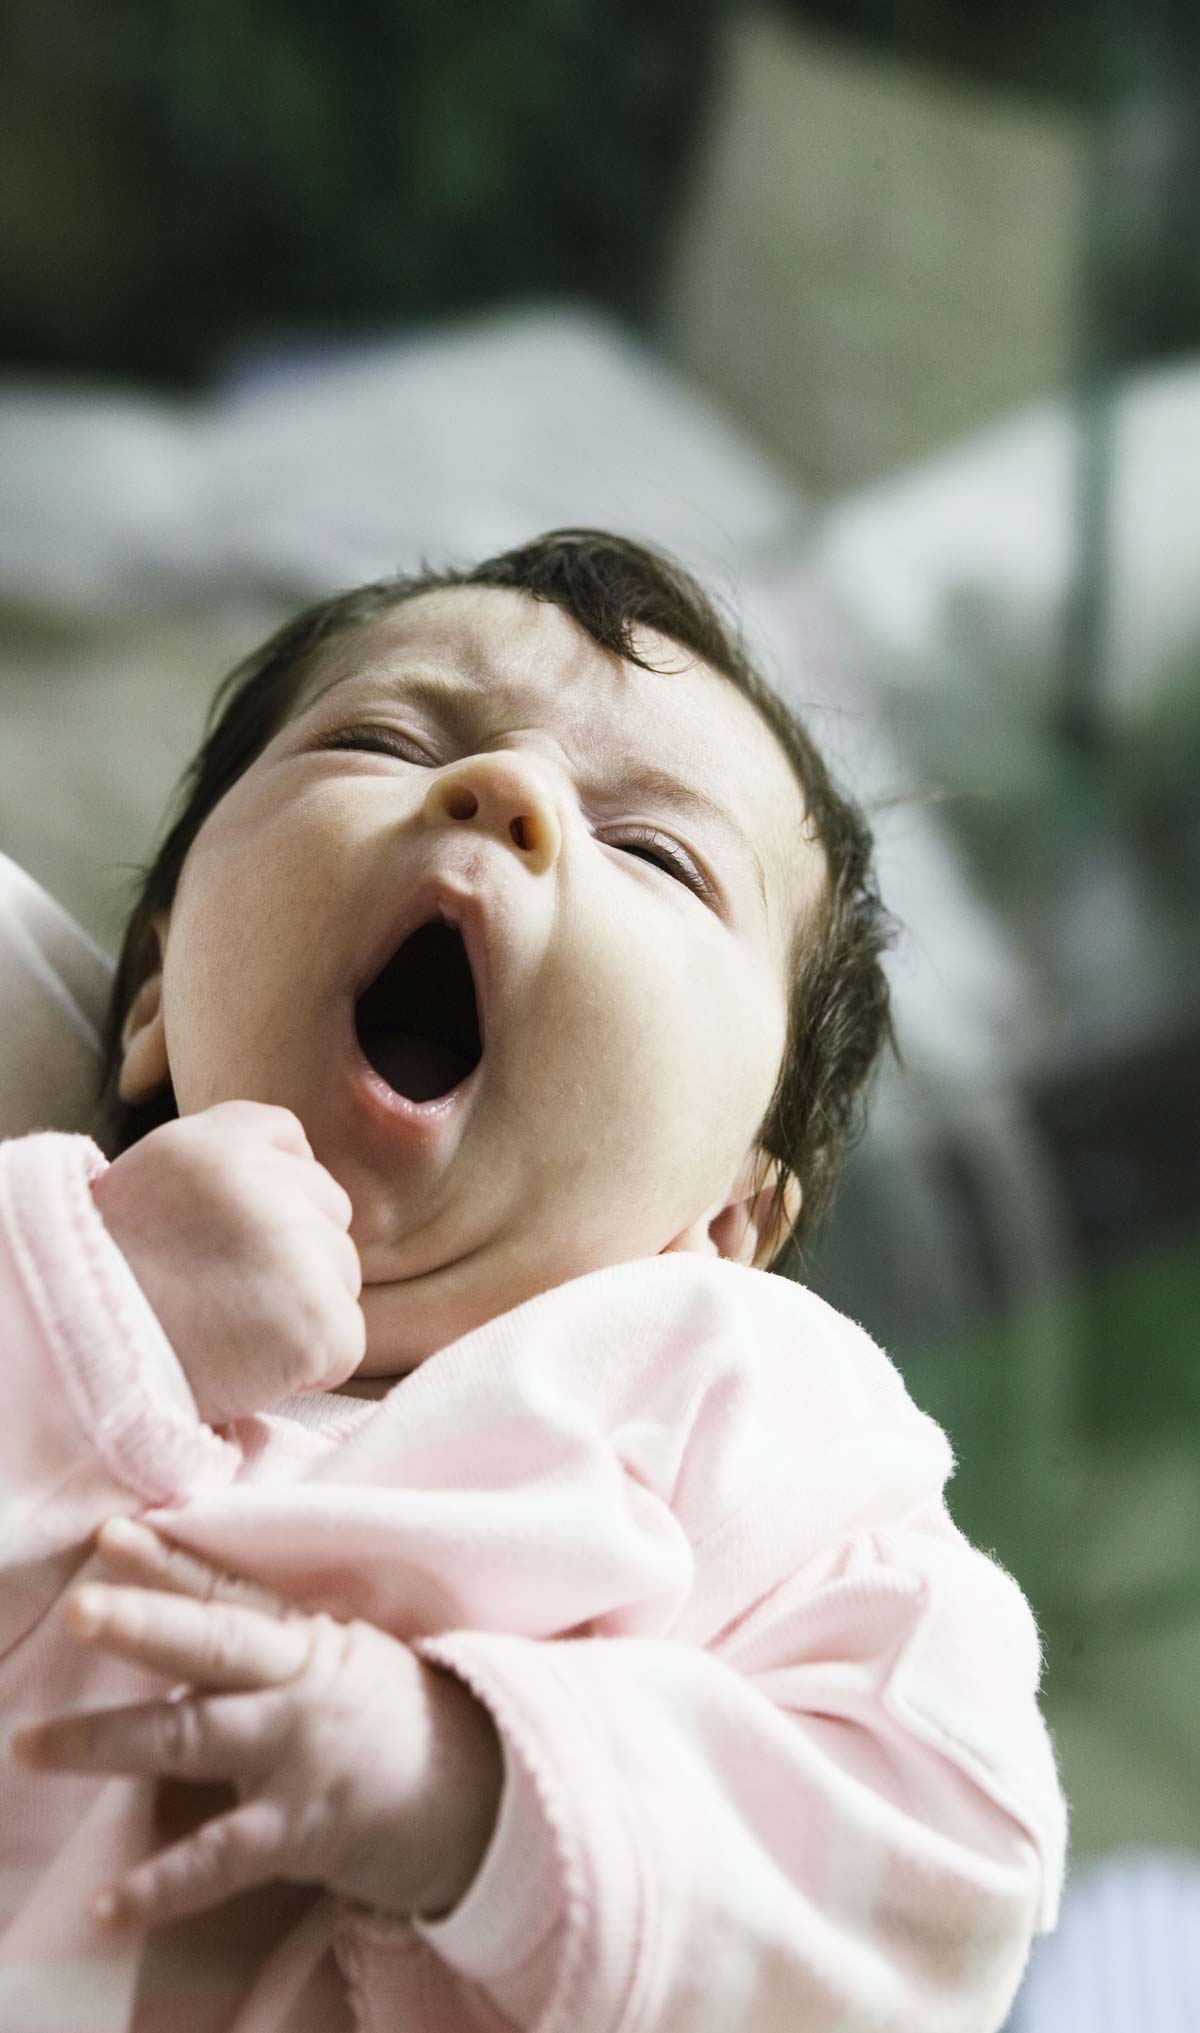 مشکلات خواب در نوزادی و راه های مقابله با آن